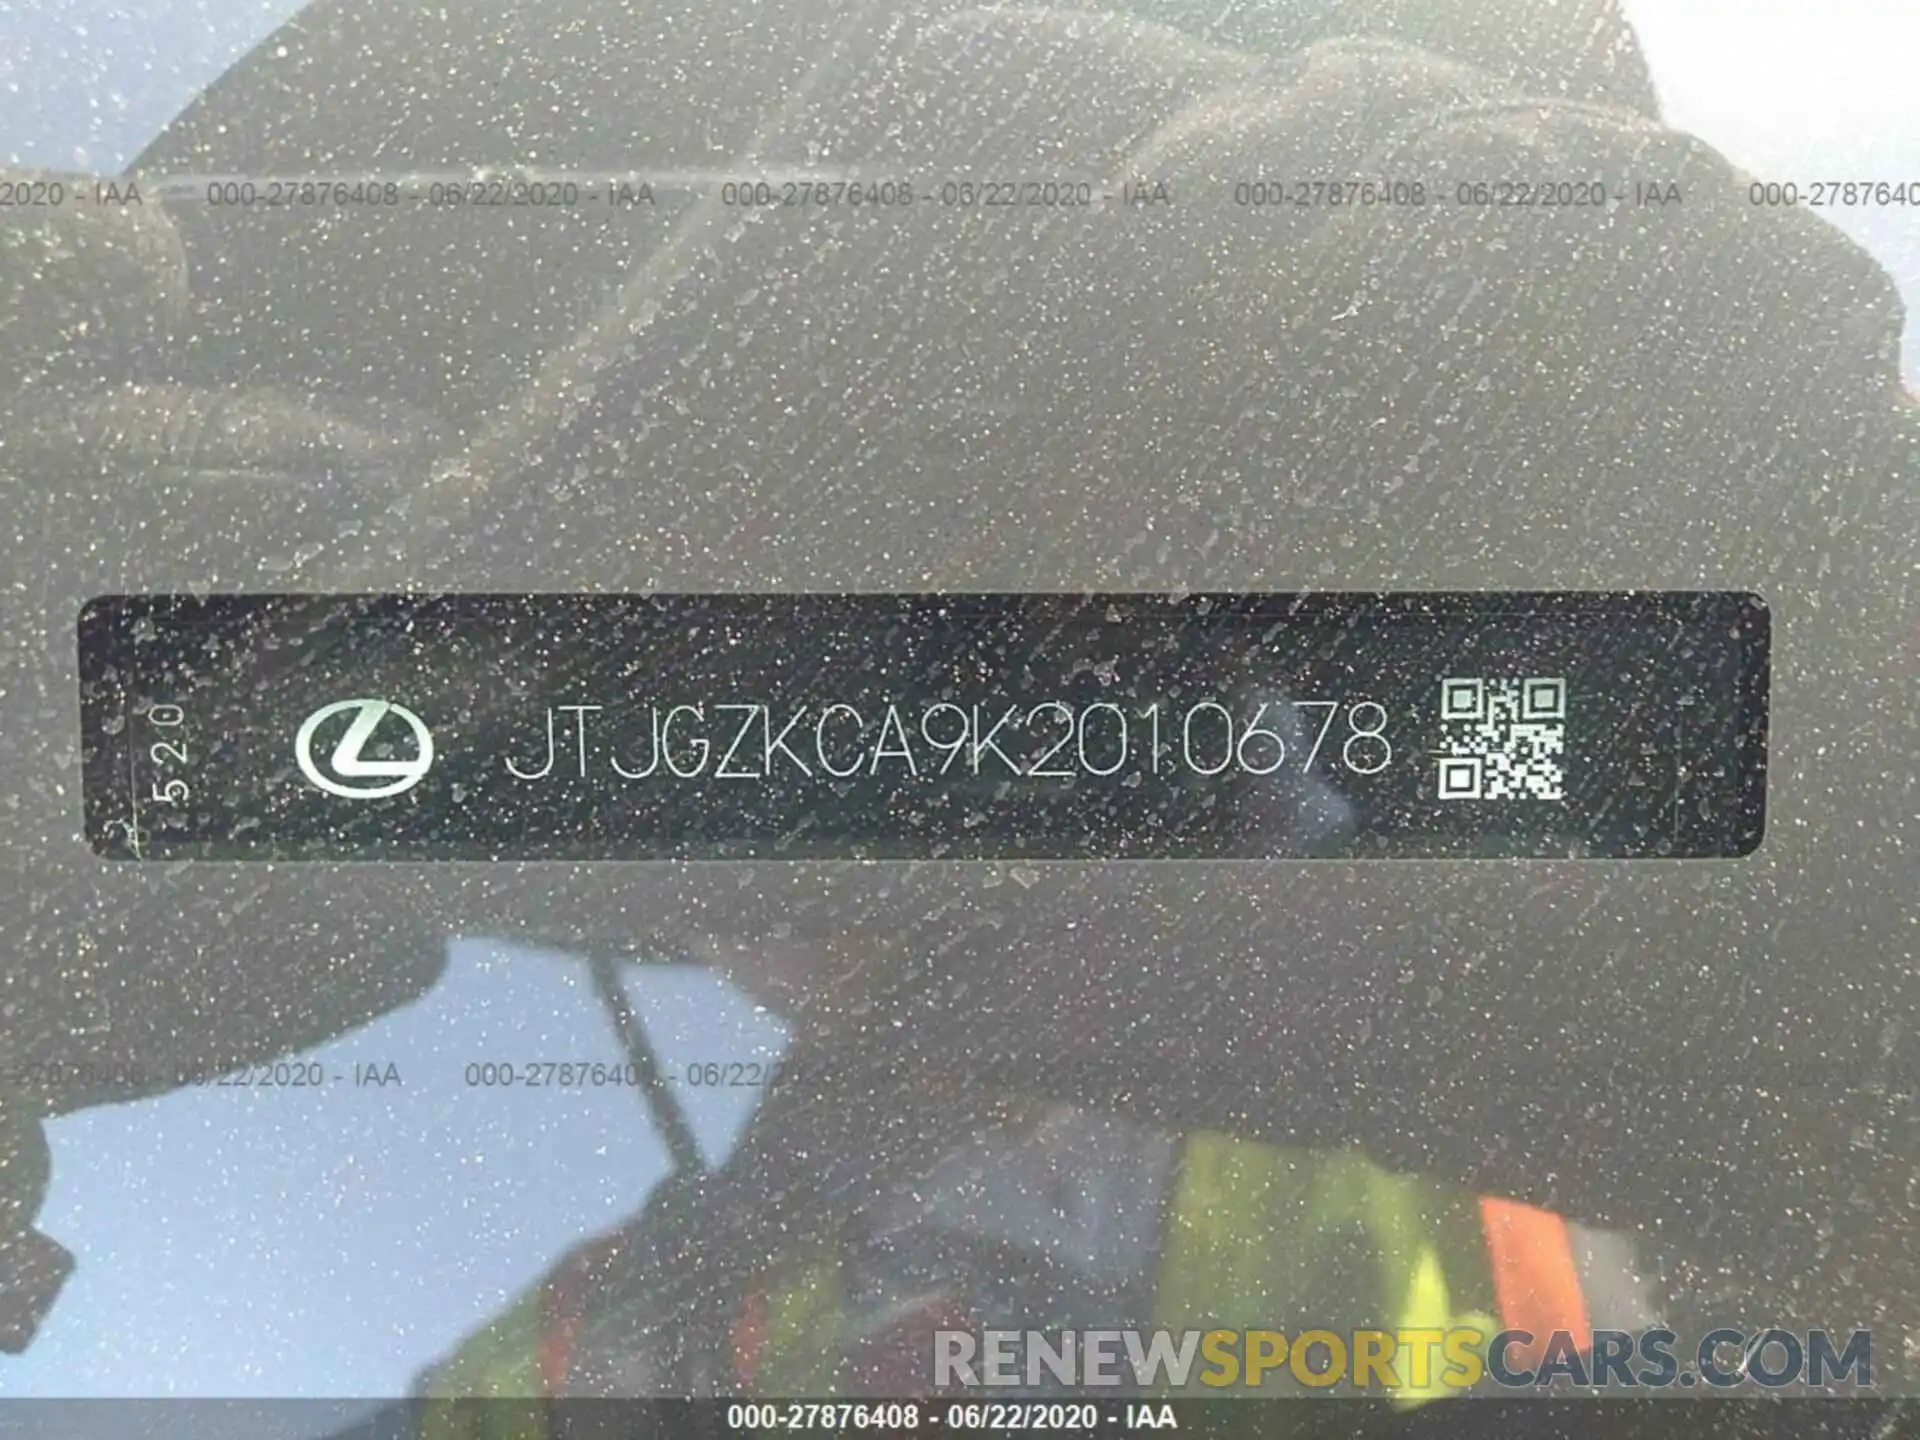 9 Photograph of a damaged car JTJGZKCA9K2010678 LEXUS RX 2019